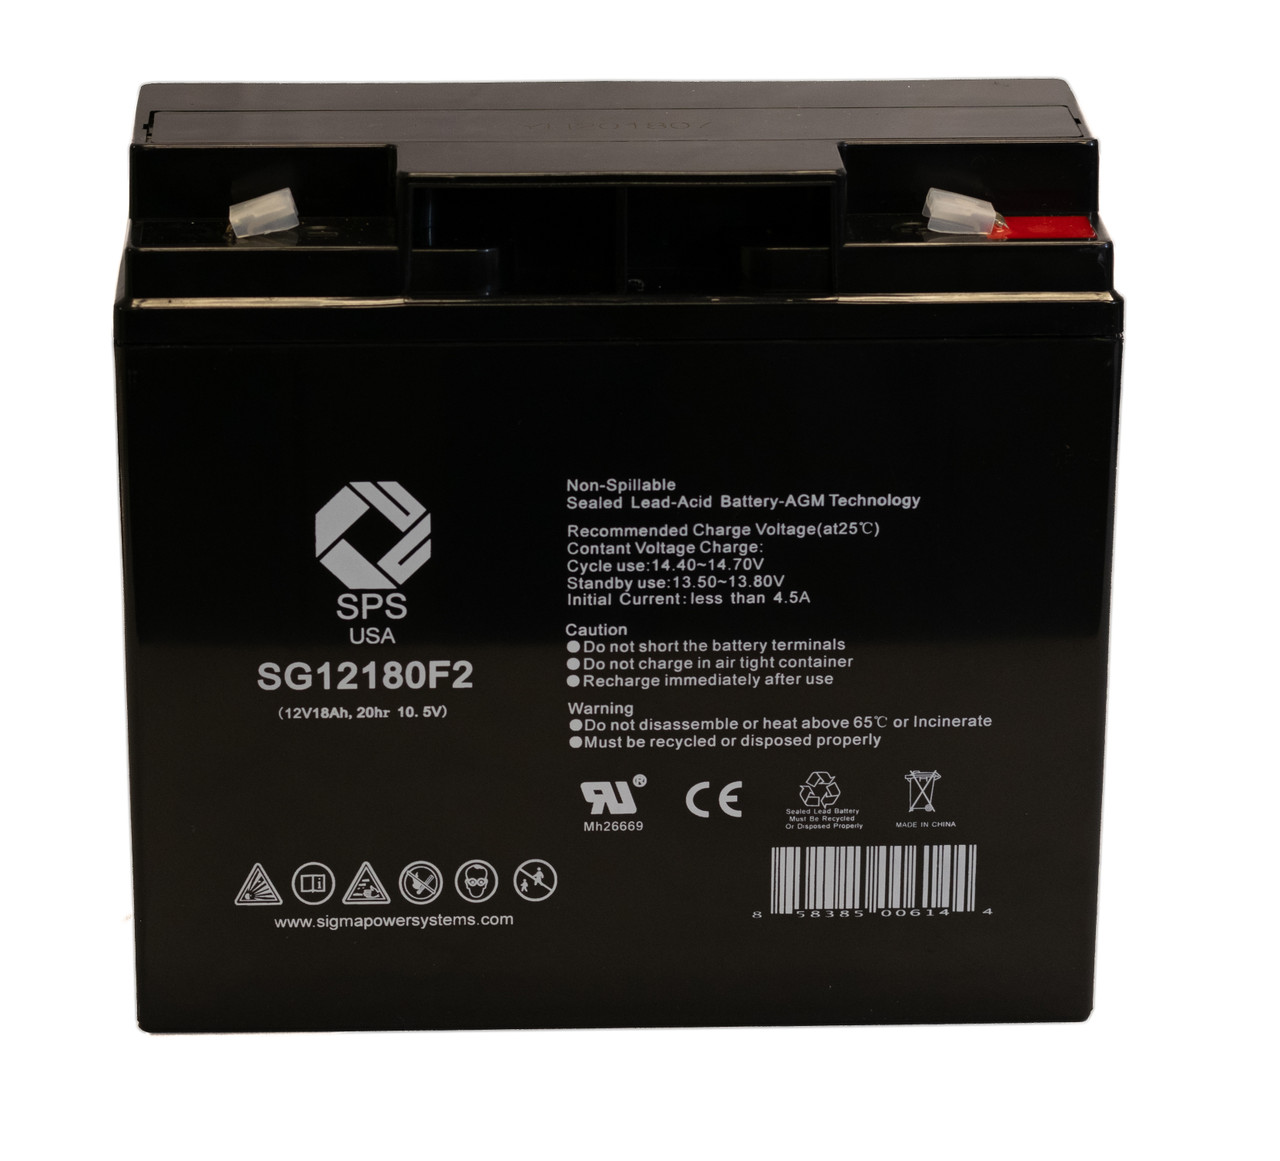 Raion Power RG12180T2 12V 18Ah Non-Spillable Battery for Silent Partner Sport 2010 Newer